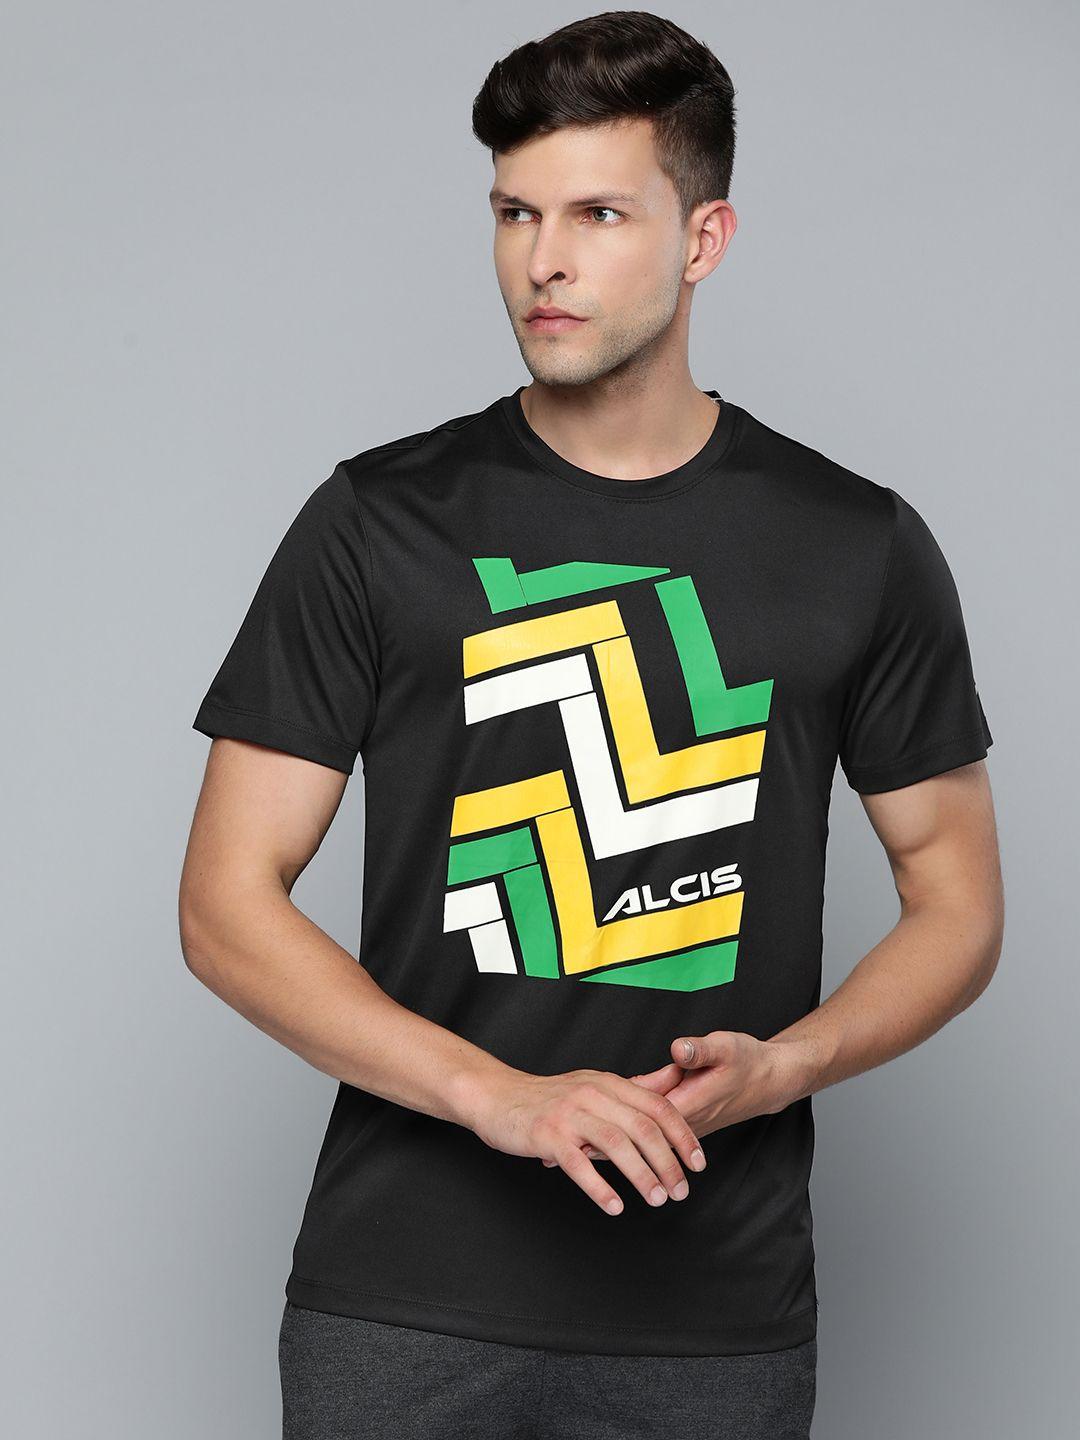 alcis-men-black-&-yellow-printed-slim-fit-t-shirt